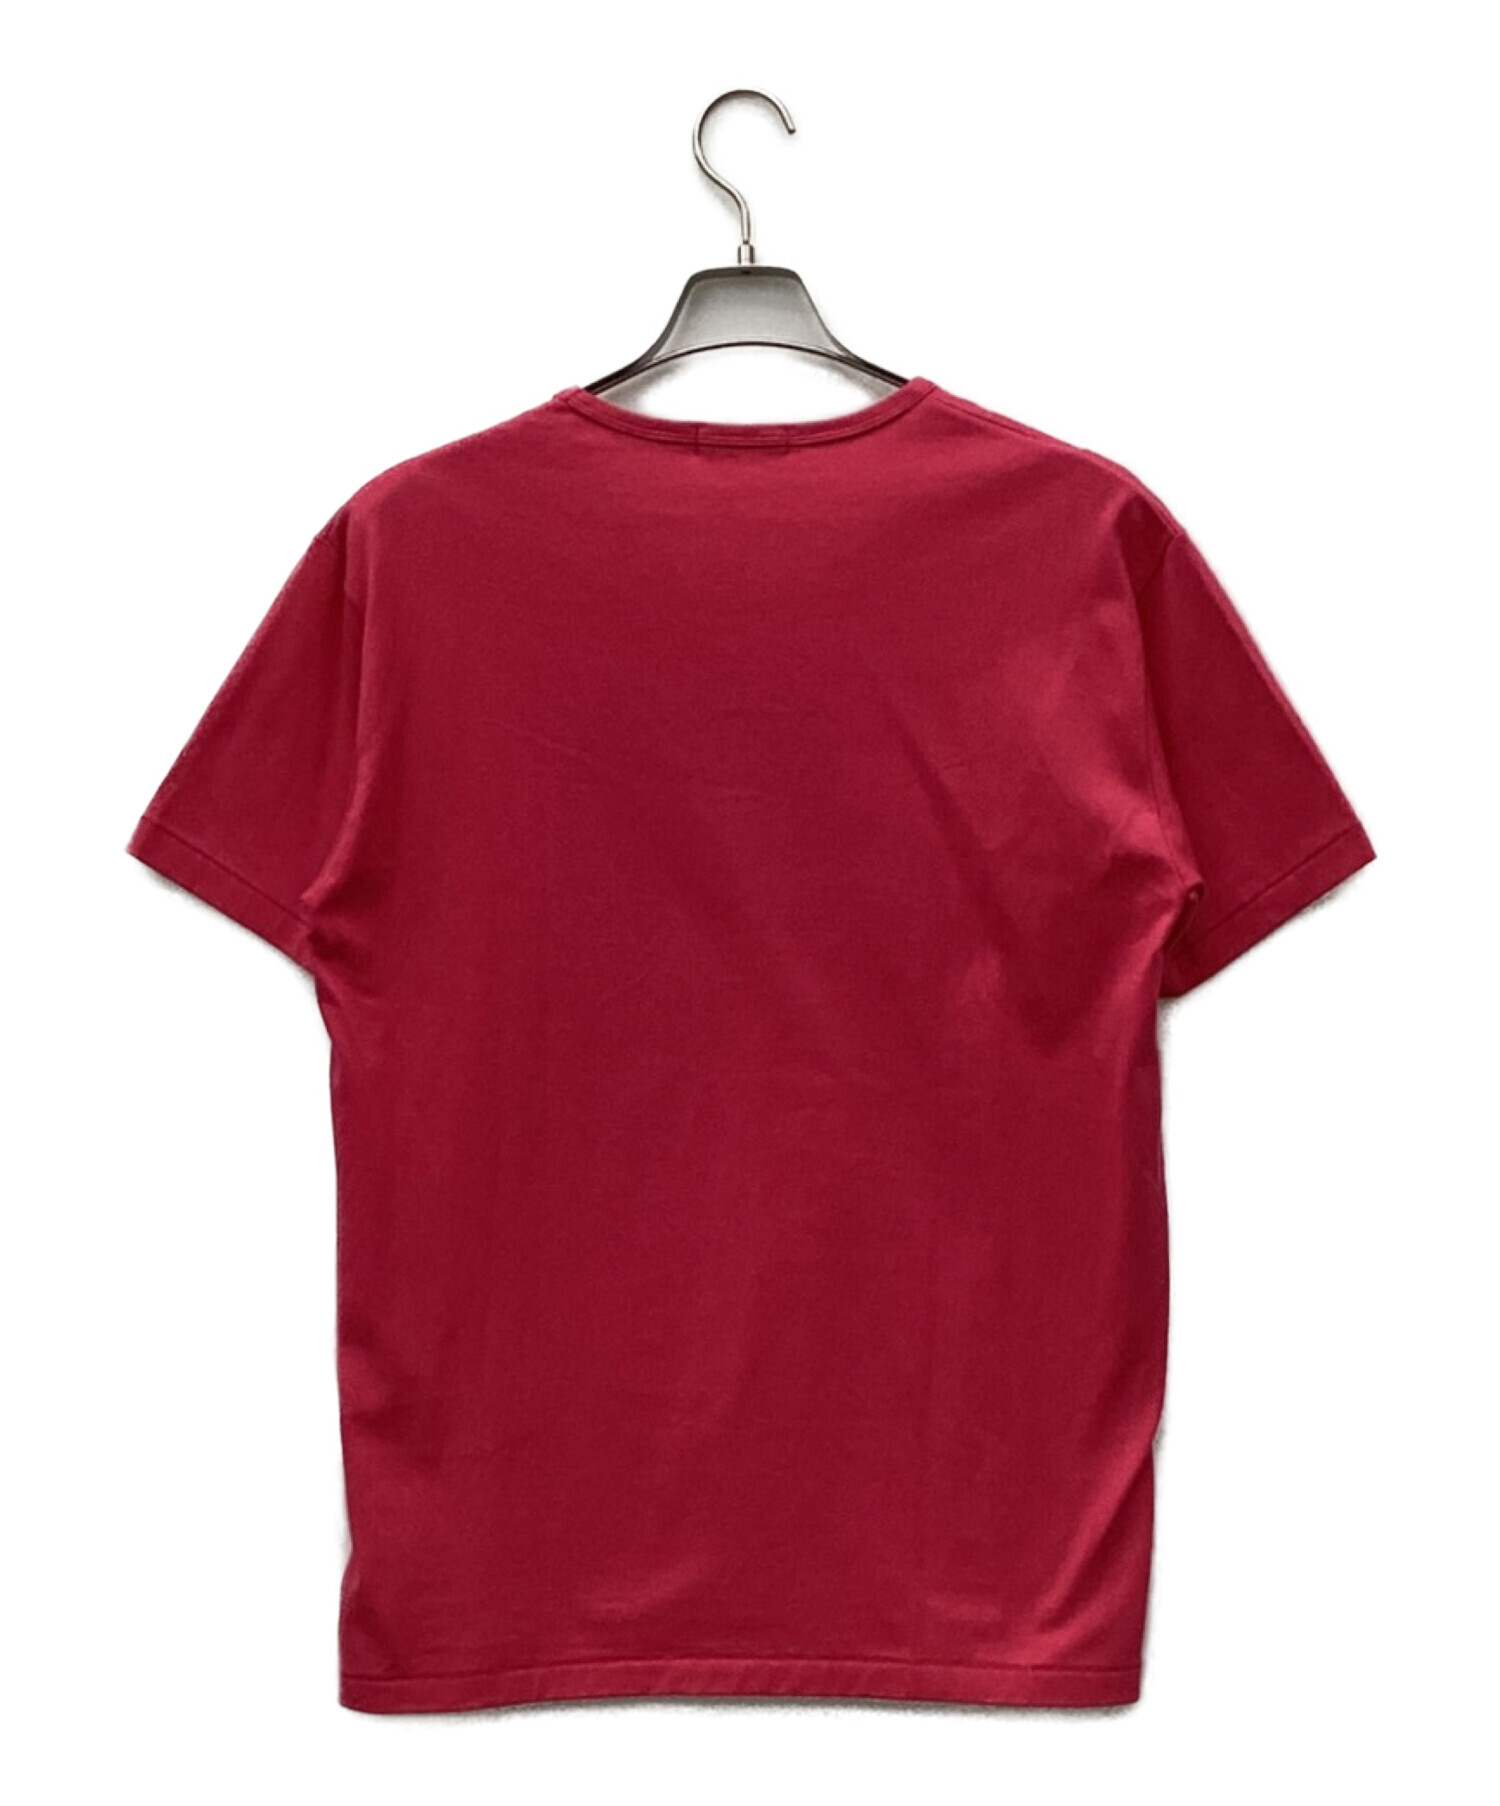 BURBERRY BLACK LABEL (バーバリーブラックレーベル) Tシャツ ピンク サイズ:L